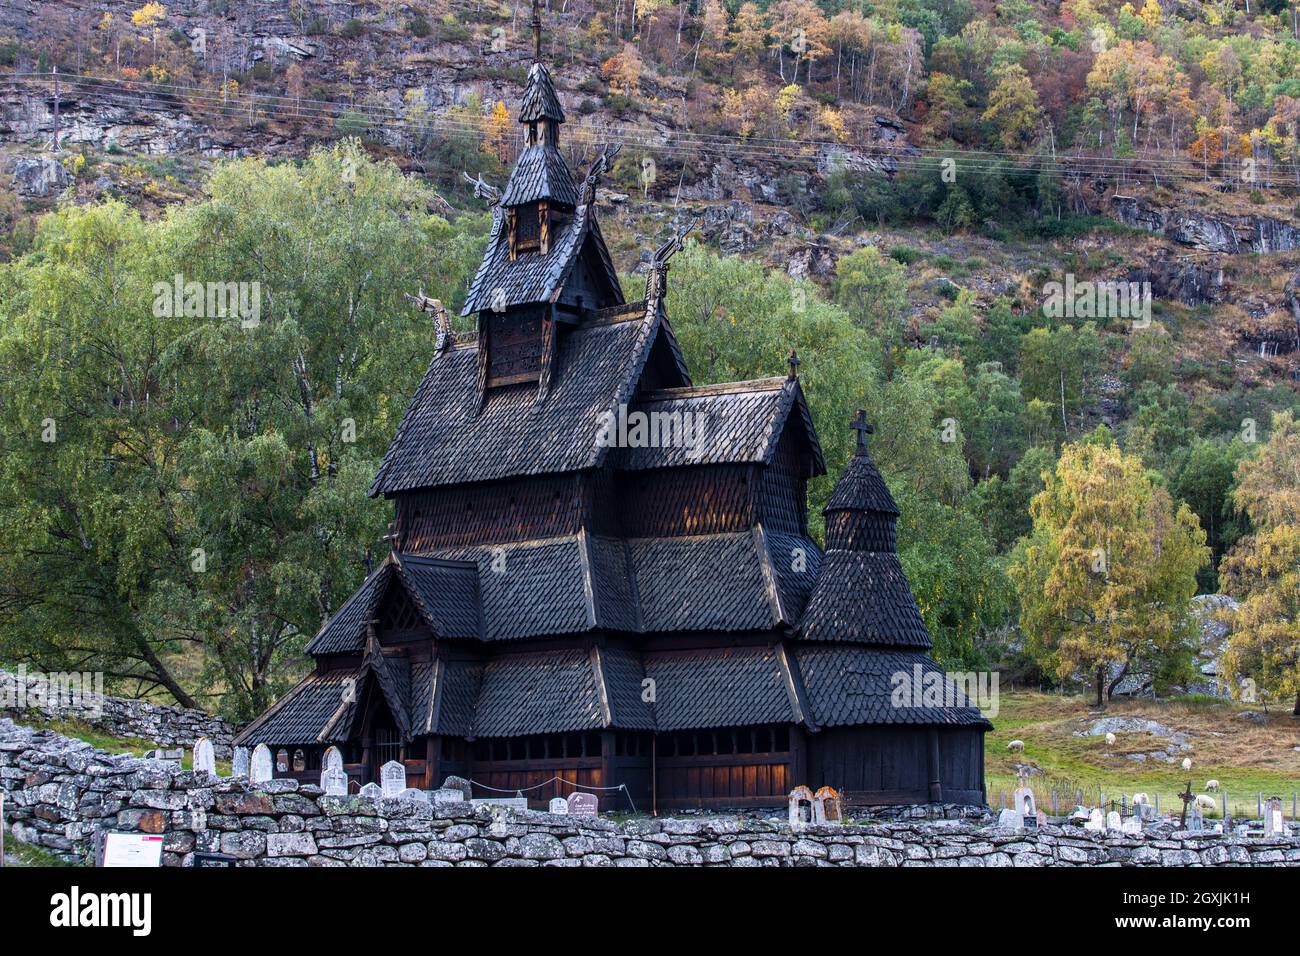 Norwegian wooden stave church in Borgund Stock Photo